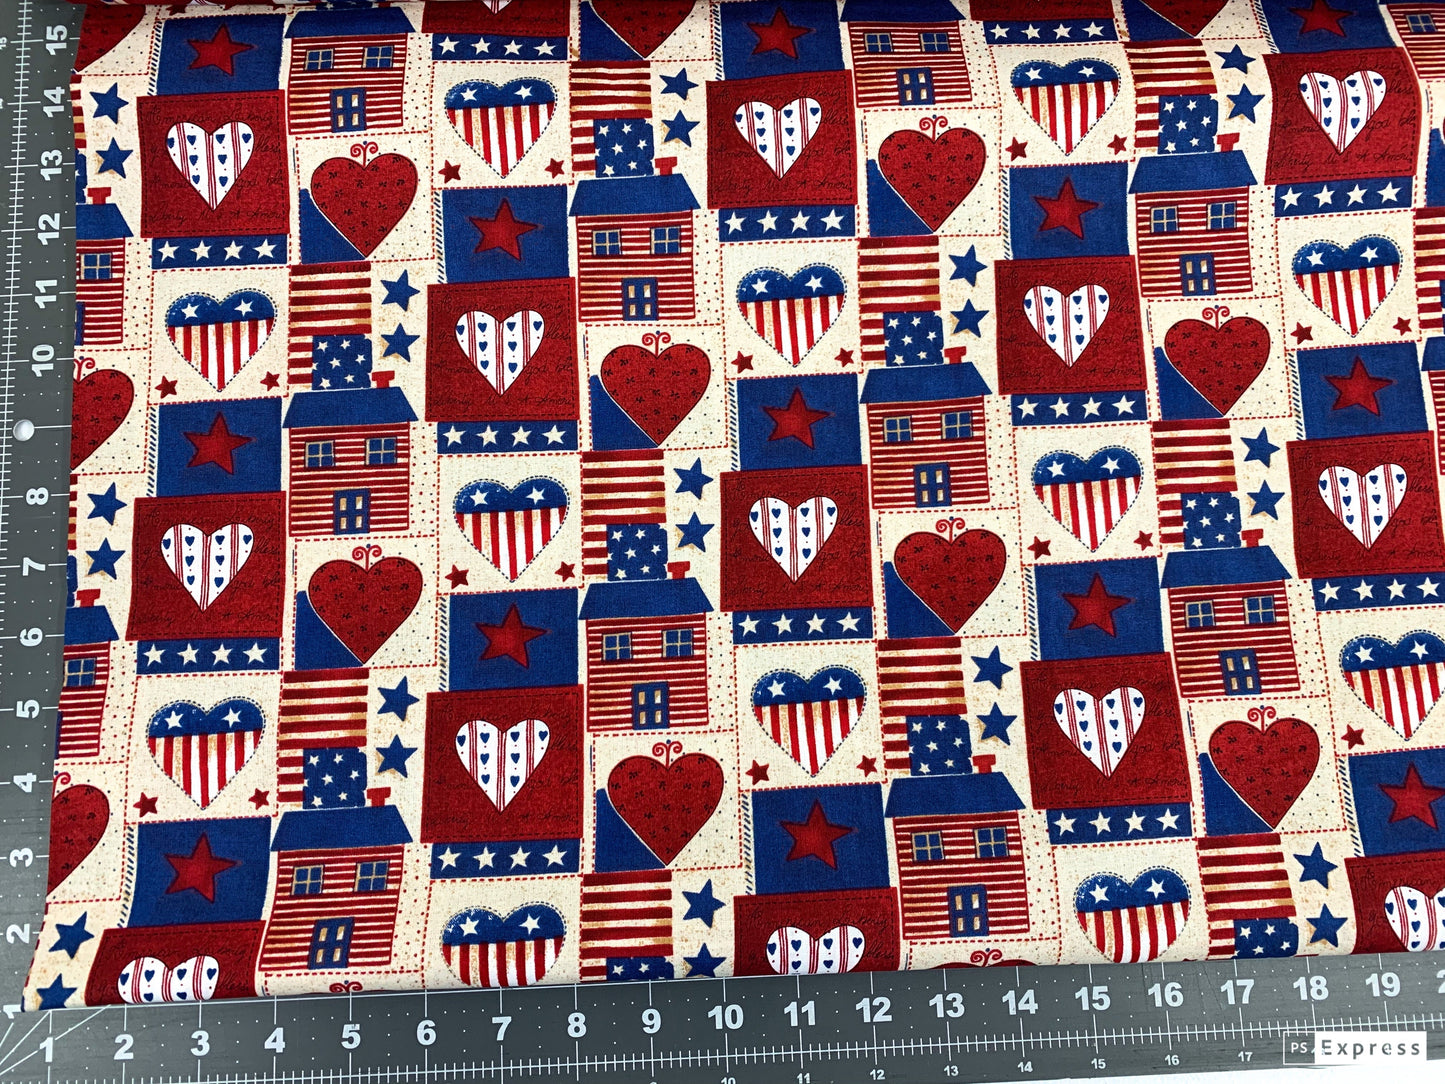 USA Heart Patriotic fabric AG-9063-1B Americana hearts